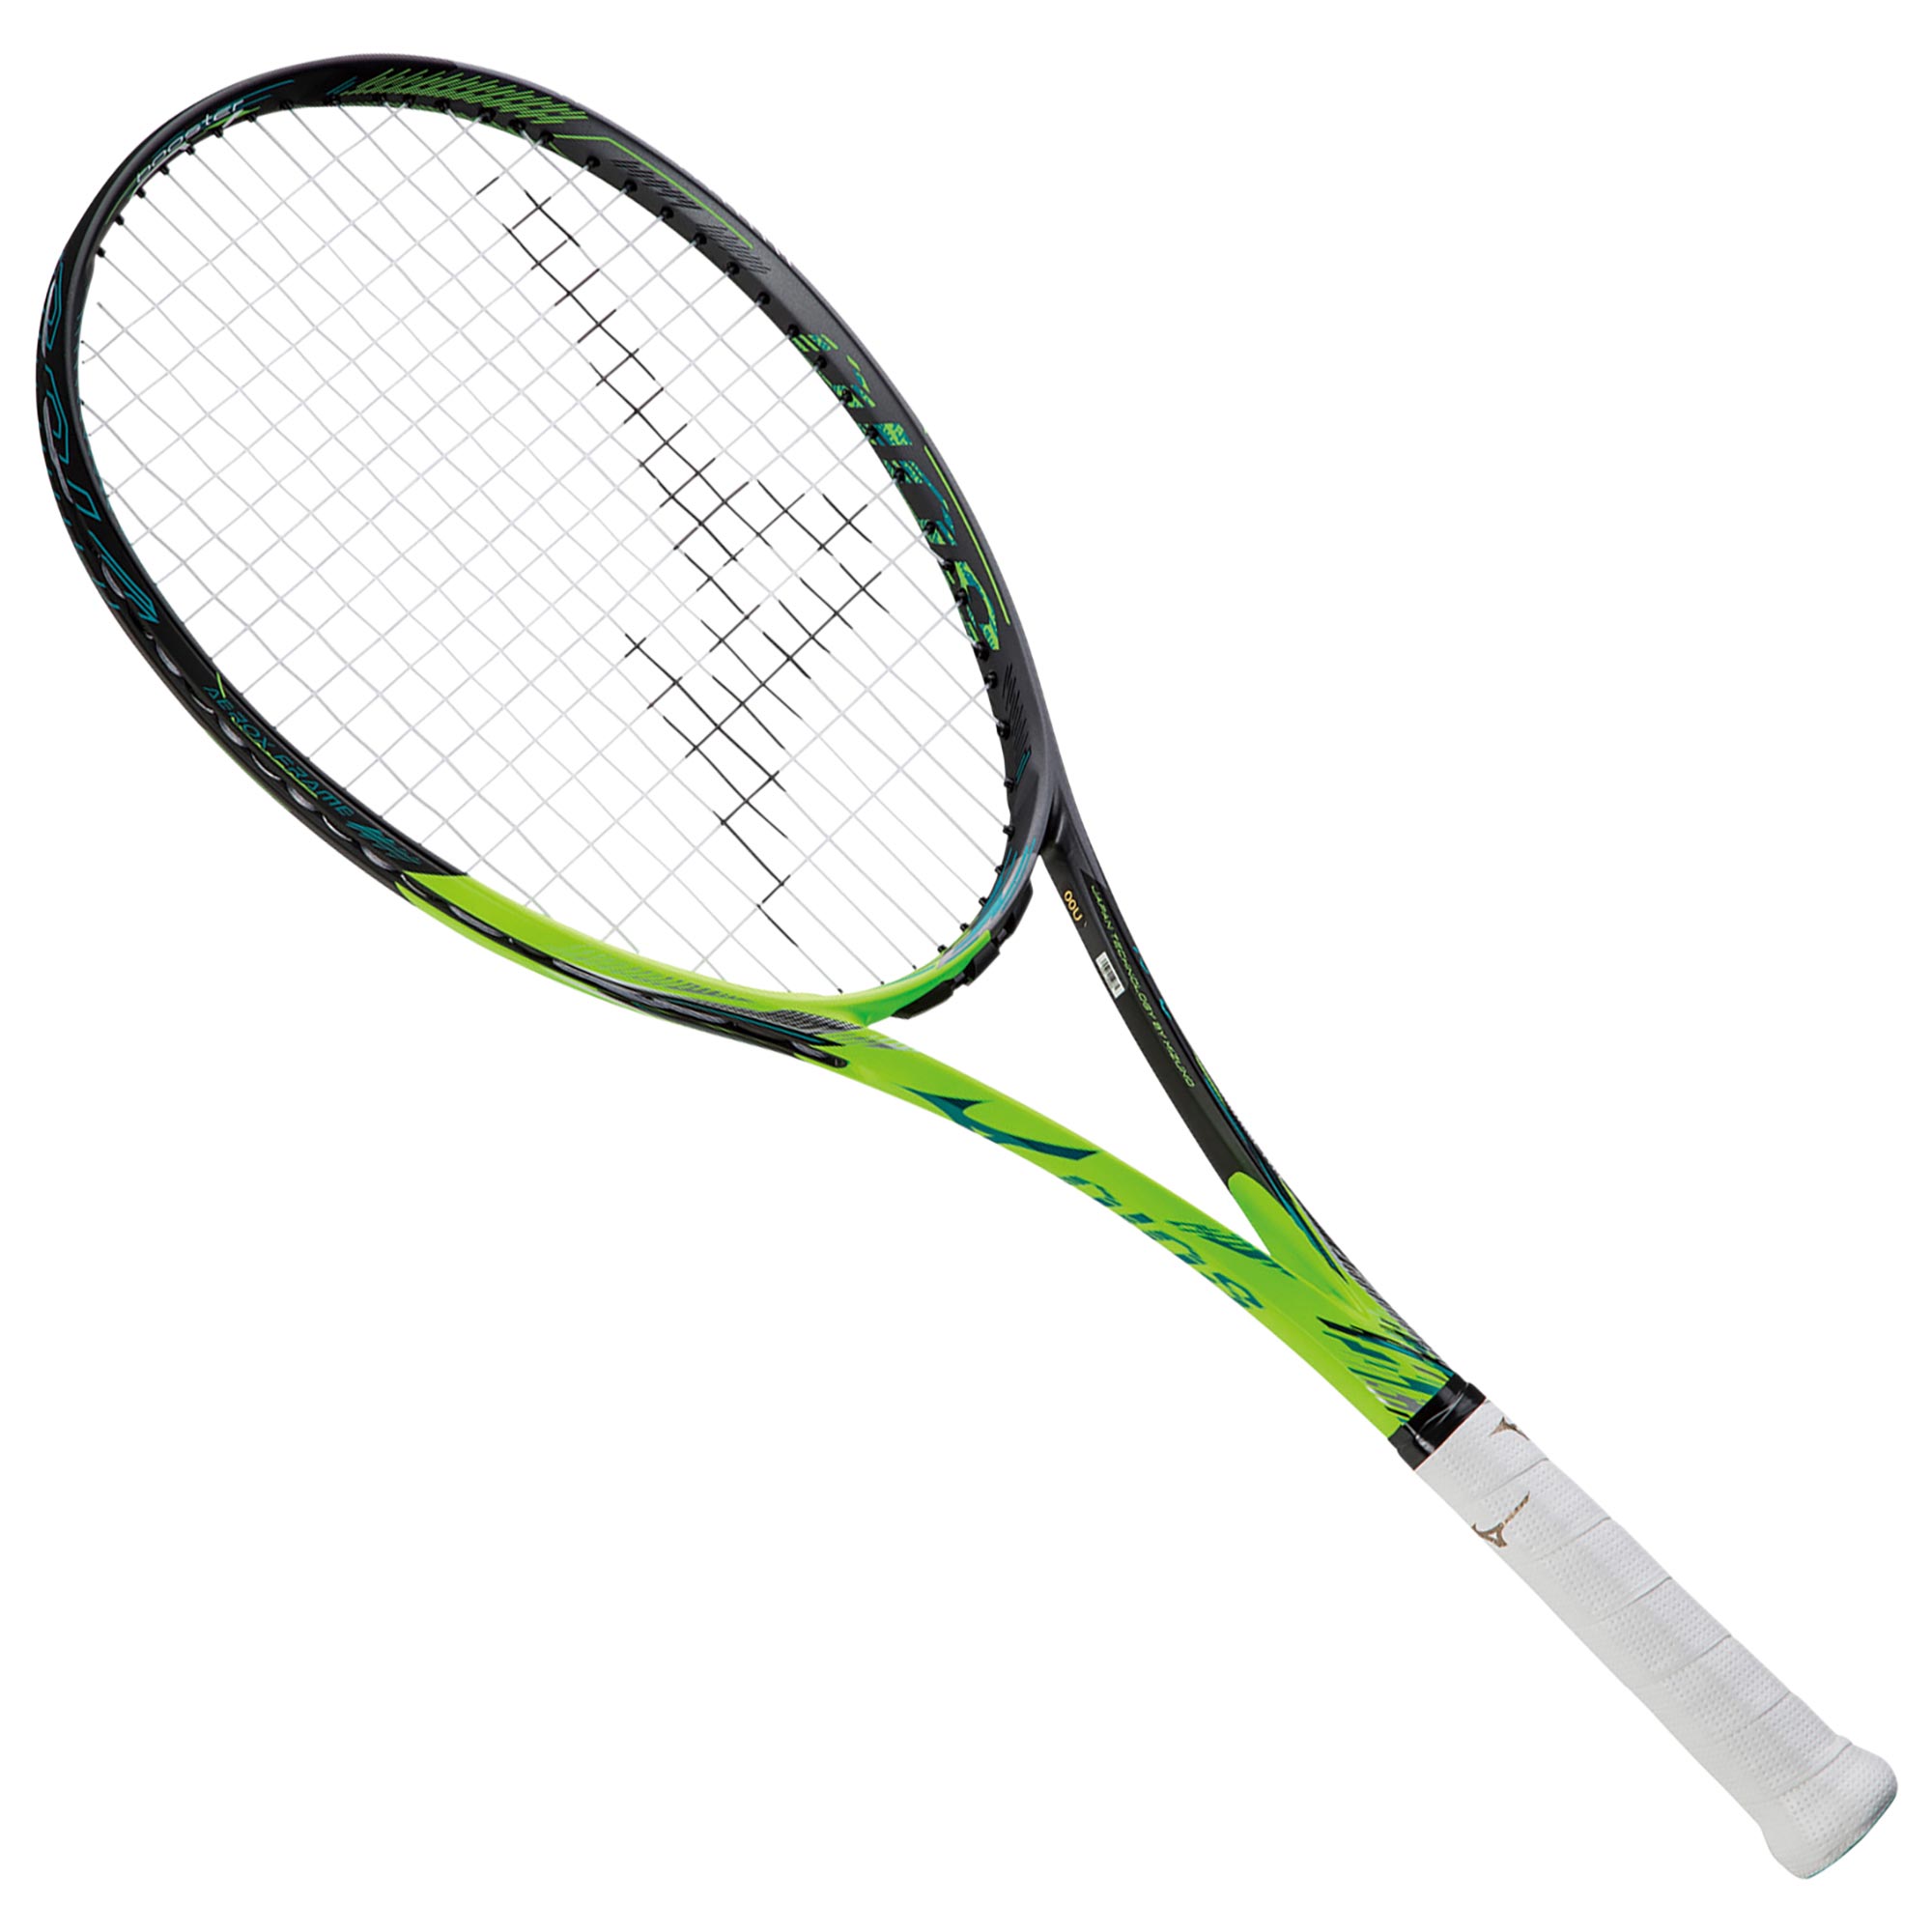 ミズノ-ソフトテニス-ラケット-DIOSpro-c - ラケット(軟式用)